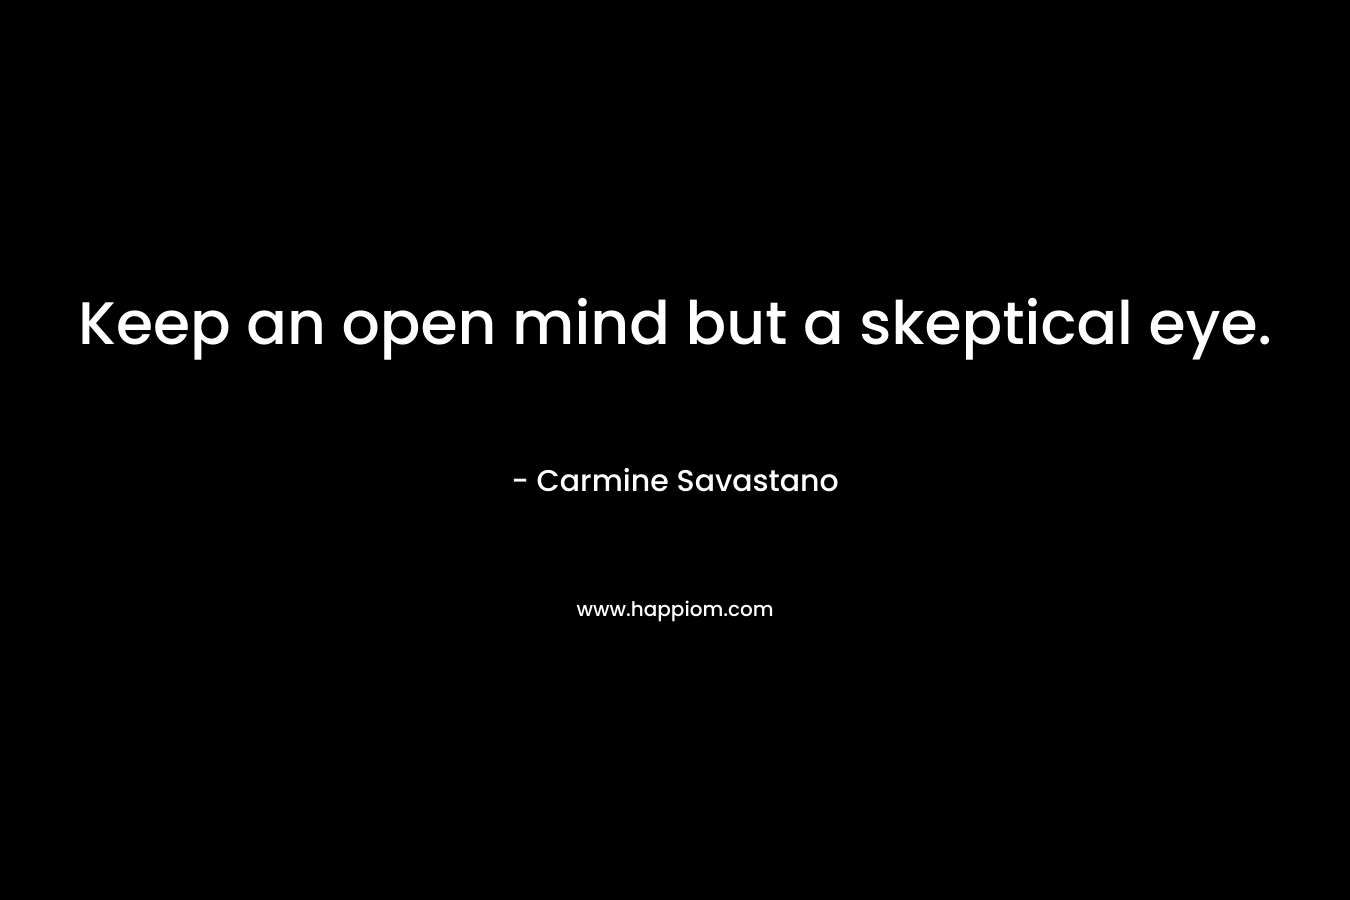 Keep an open mind but a skeptical eye.